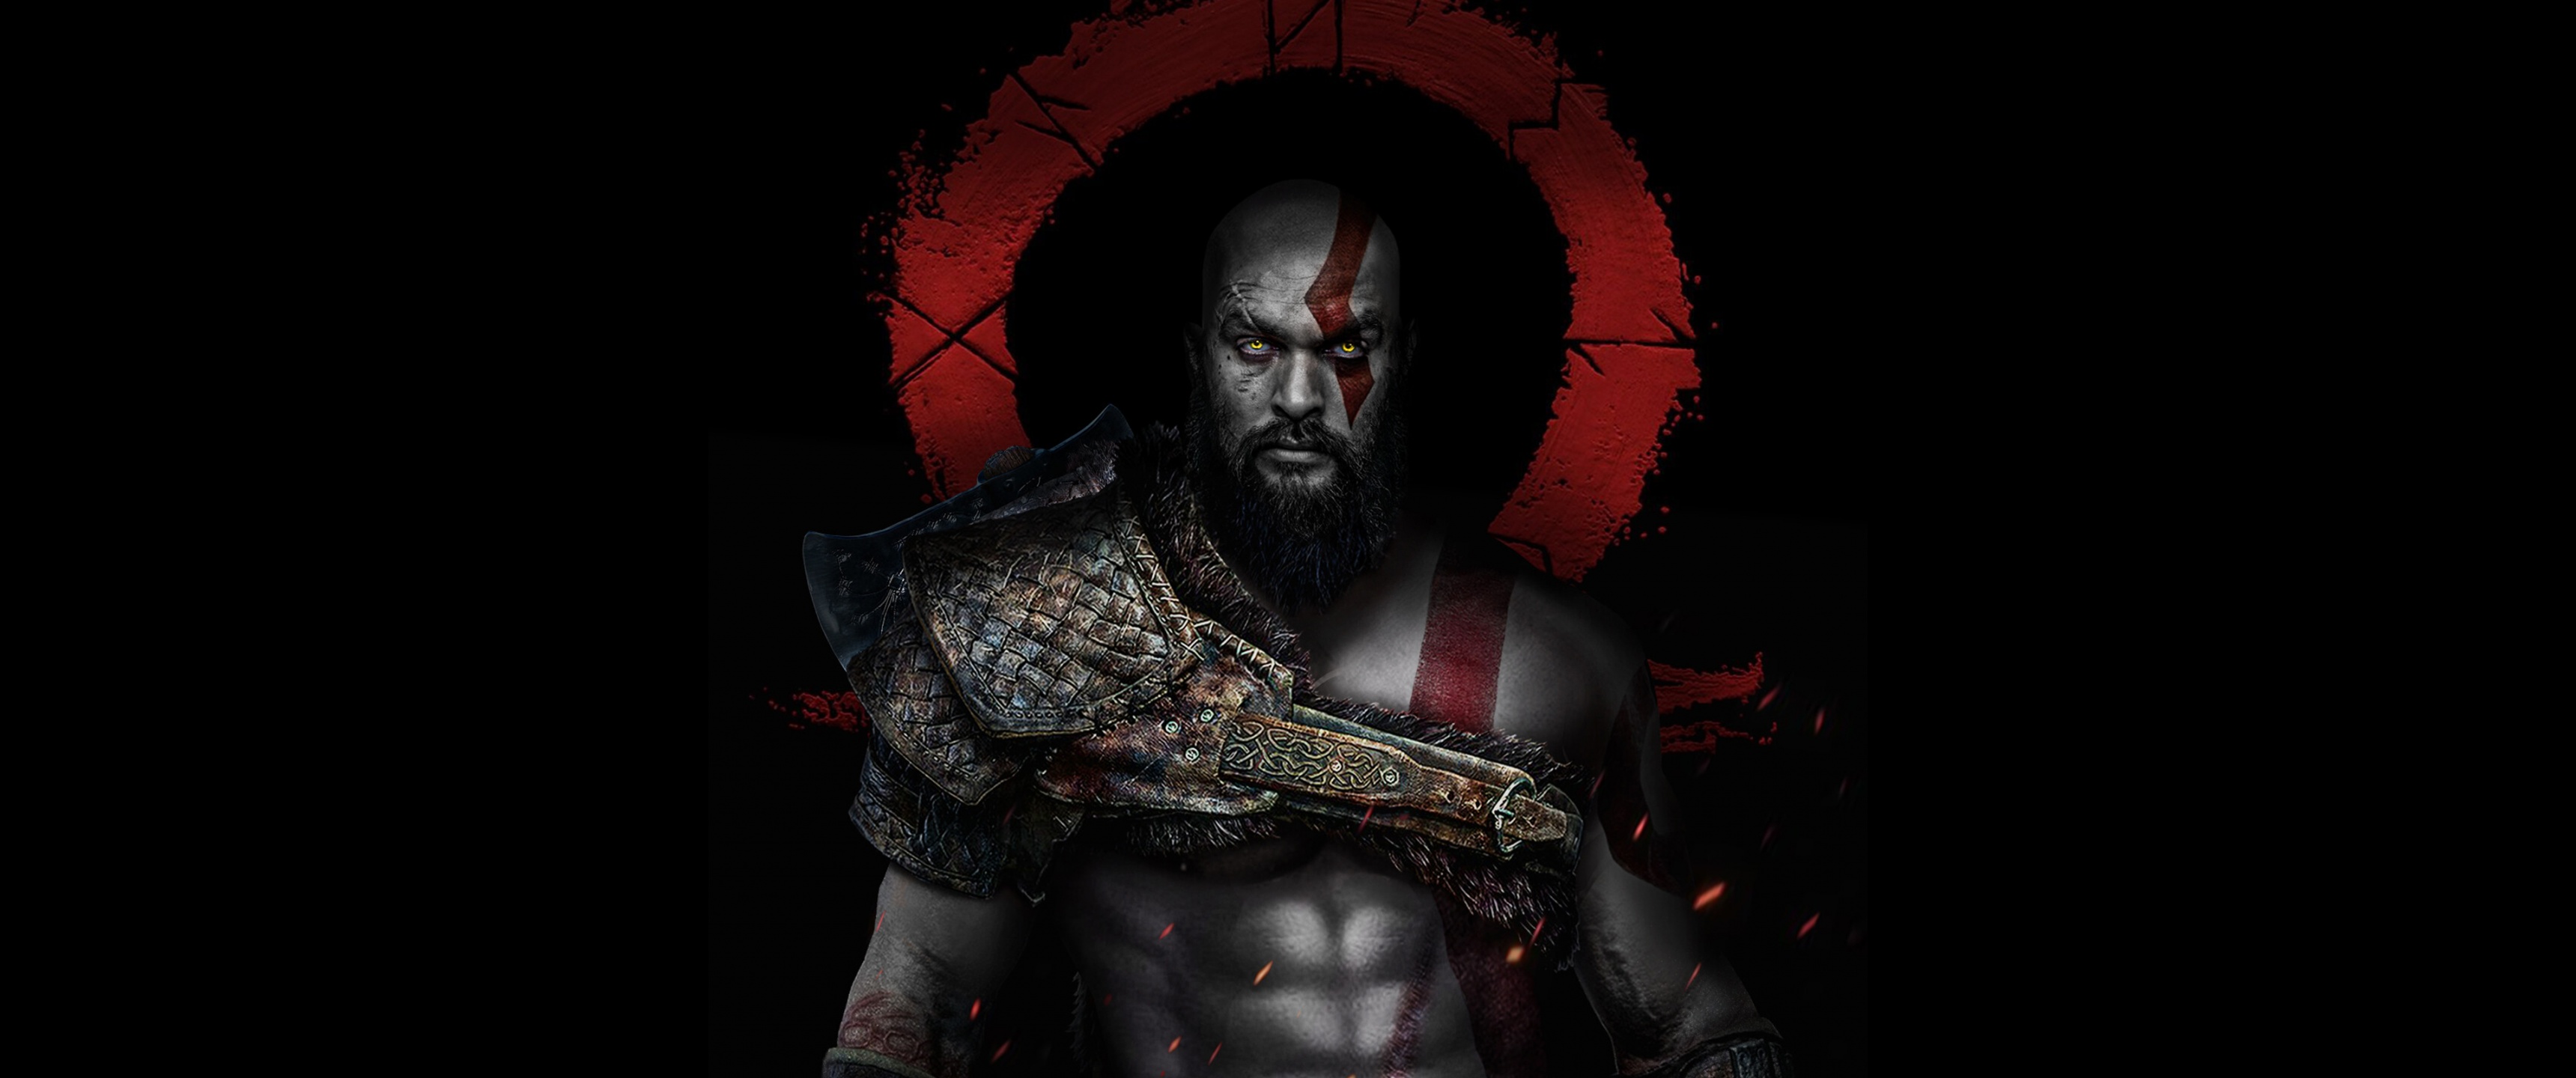 Sở hữu ngay hình nền 4k với hiệu ứng CGI tuyệt đẹp của Kratos và Jason Momoa trong God of War. Đây là bức tranh tuyệt vời khiến bạn cảm thấy như đang sống trong thế giới huyền thoại và trở thành một chiến binh đích thực.